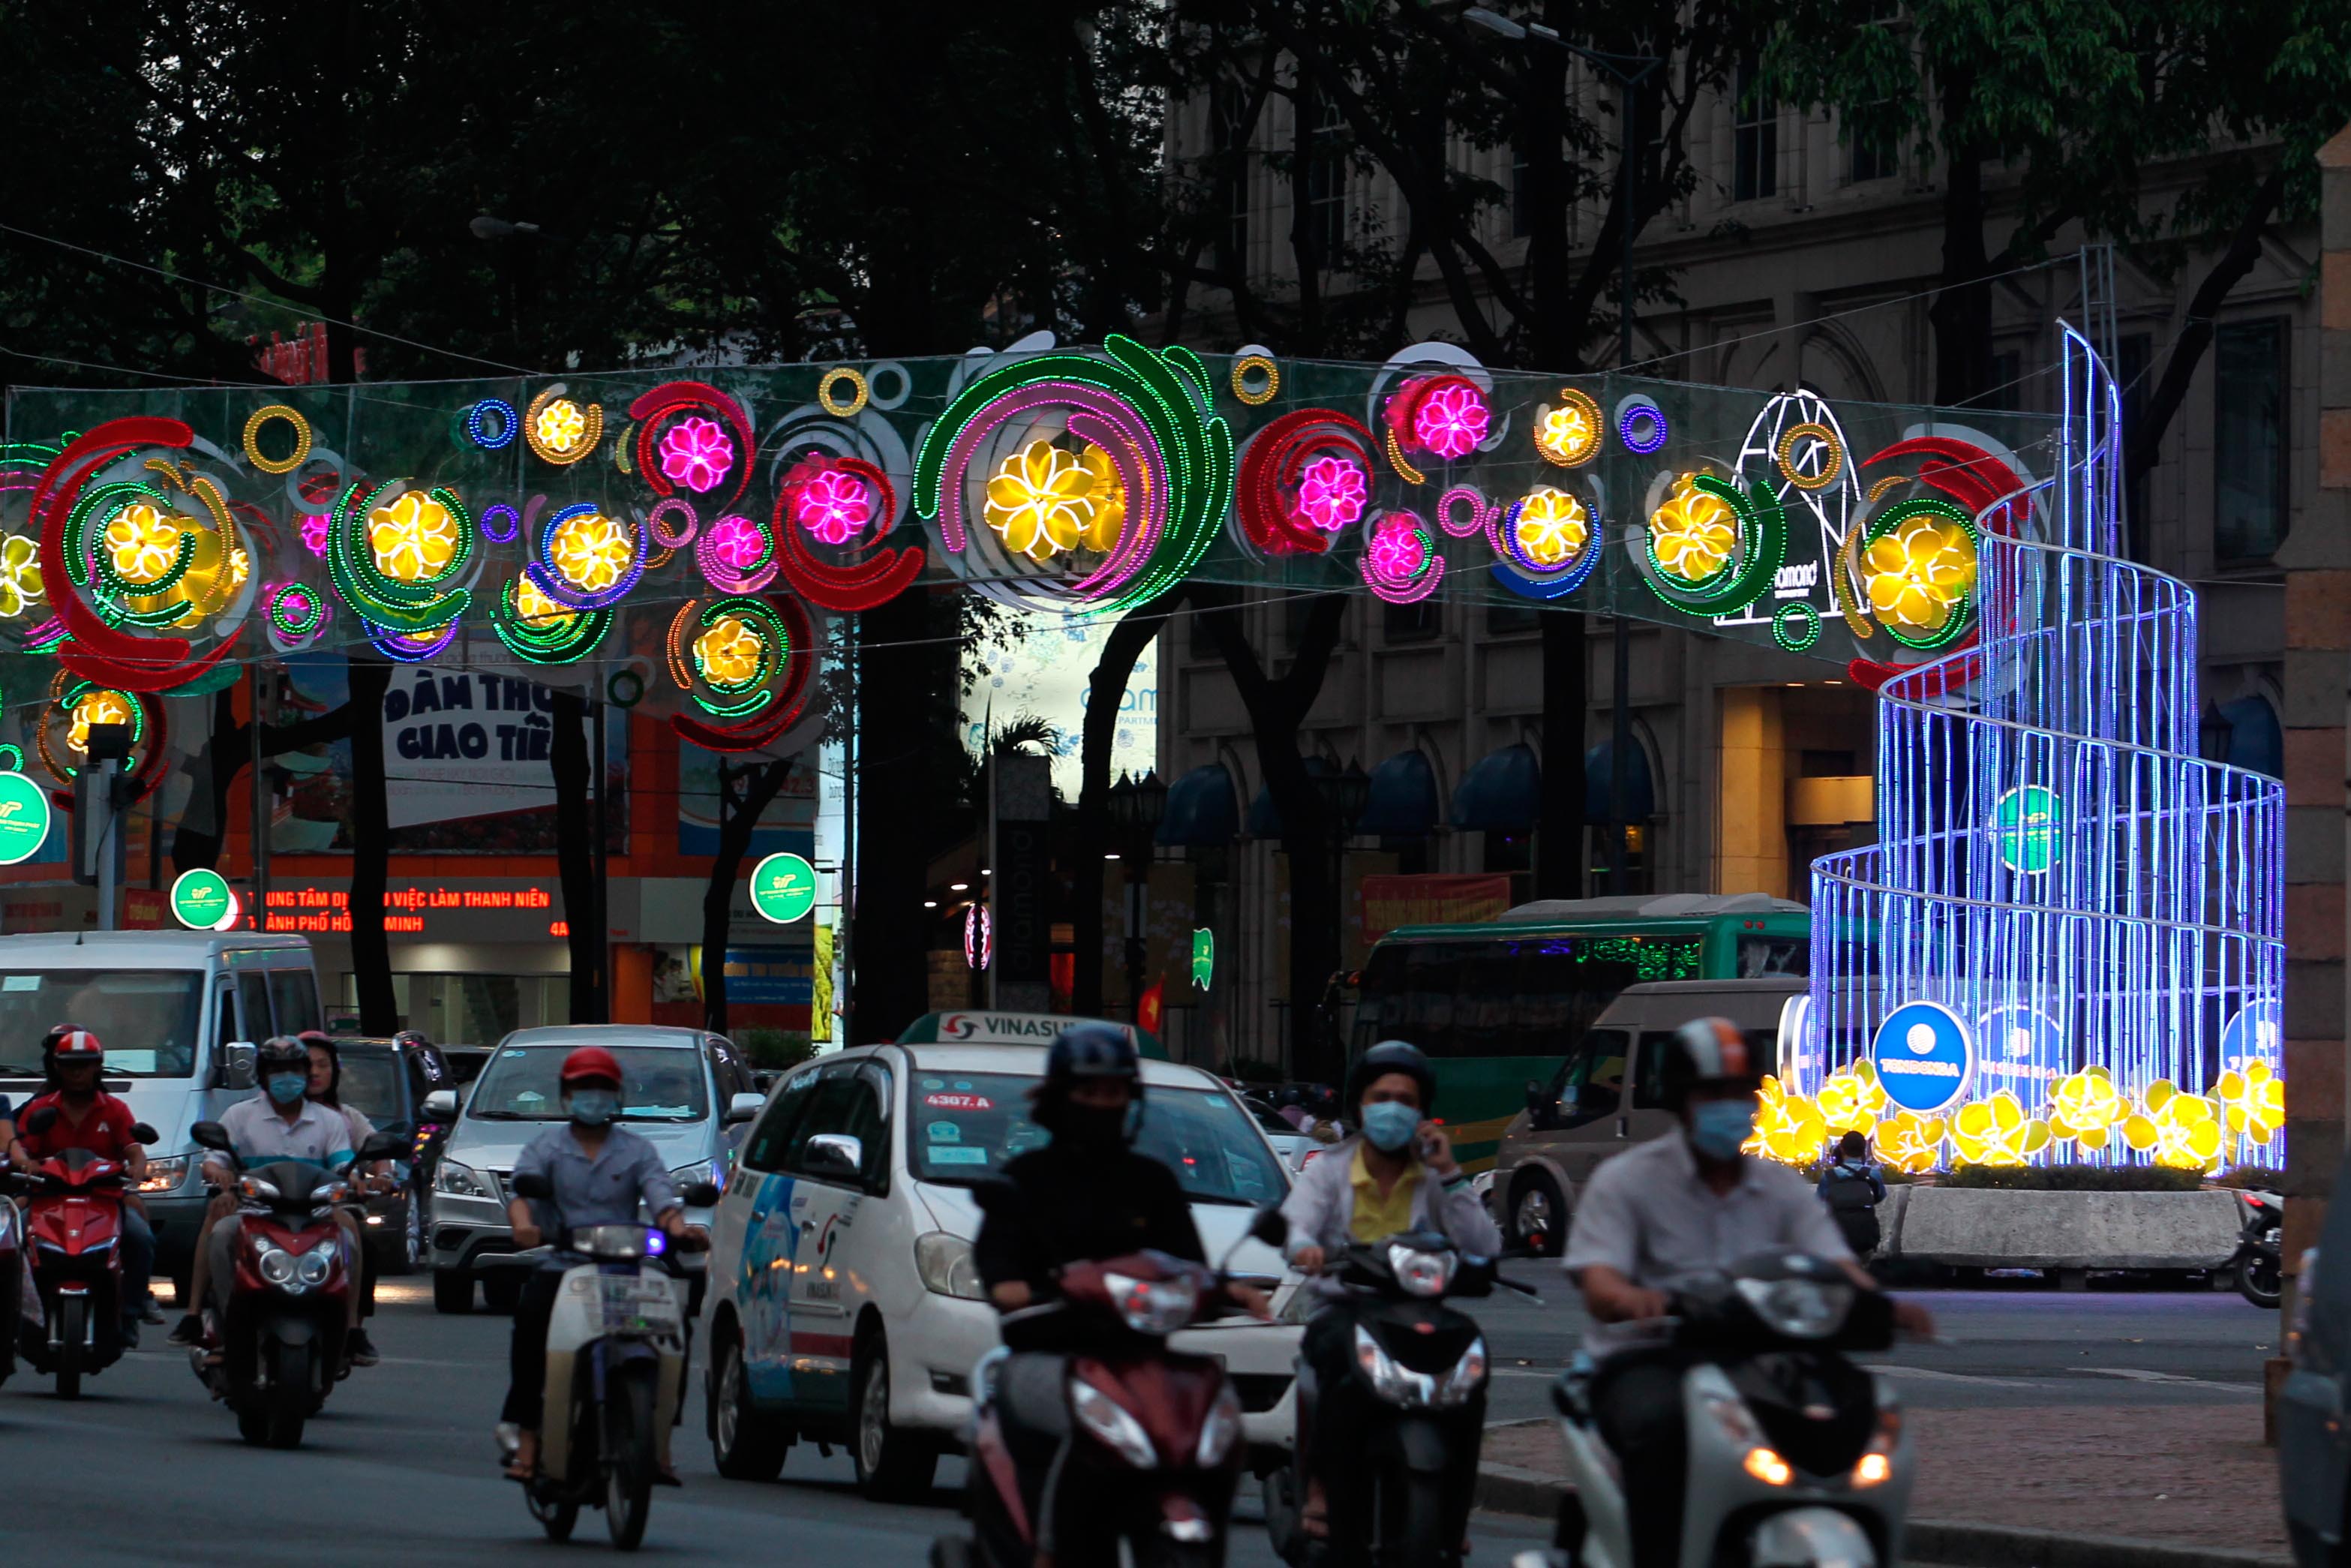 Đèn hoa TP HCM: Thành phố Hồ Chí Minh luôn là địa chỉ lý tưởng cho những người yêu mến Đèn hoa. Vào dịp Tết 2024, đường phố thành phố lại được trang hoàng rực rỡ hơn bao giờ hết với hàng ngàn đèn hoa đang đợi bạn khám phá. Hãy đến và cảm nhận không khí lễ hội đầy màu sắc với những hình ảnh đẹp nhất của Đèn hoa TP HCM trên đường phố nhộn nhịp của thành phố.